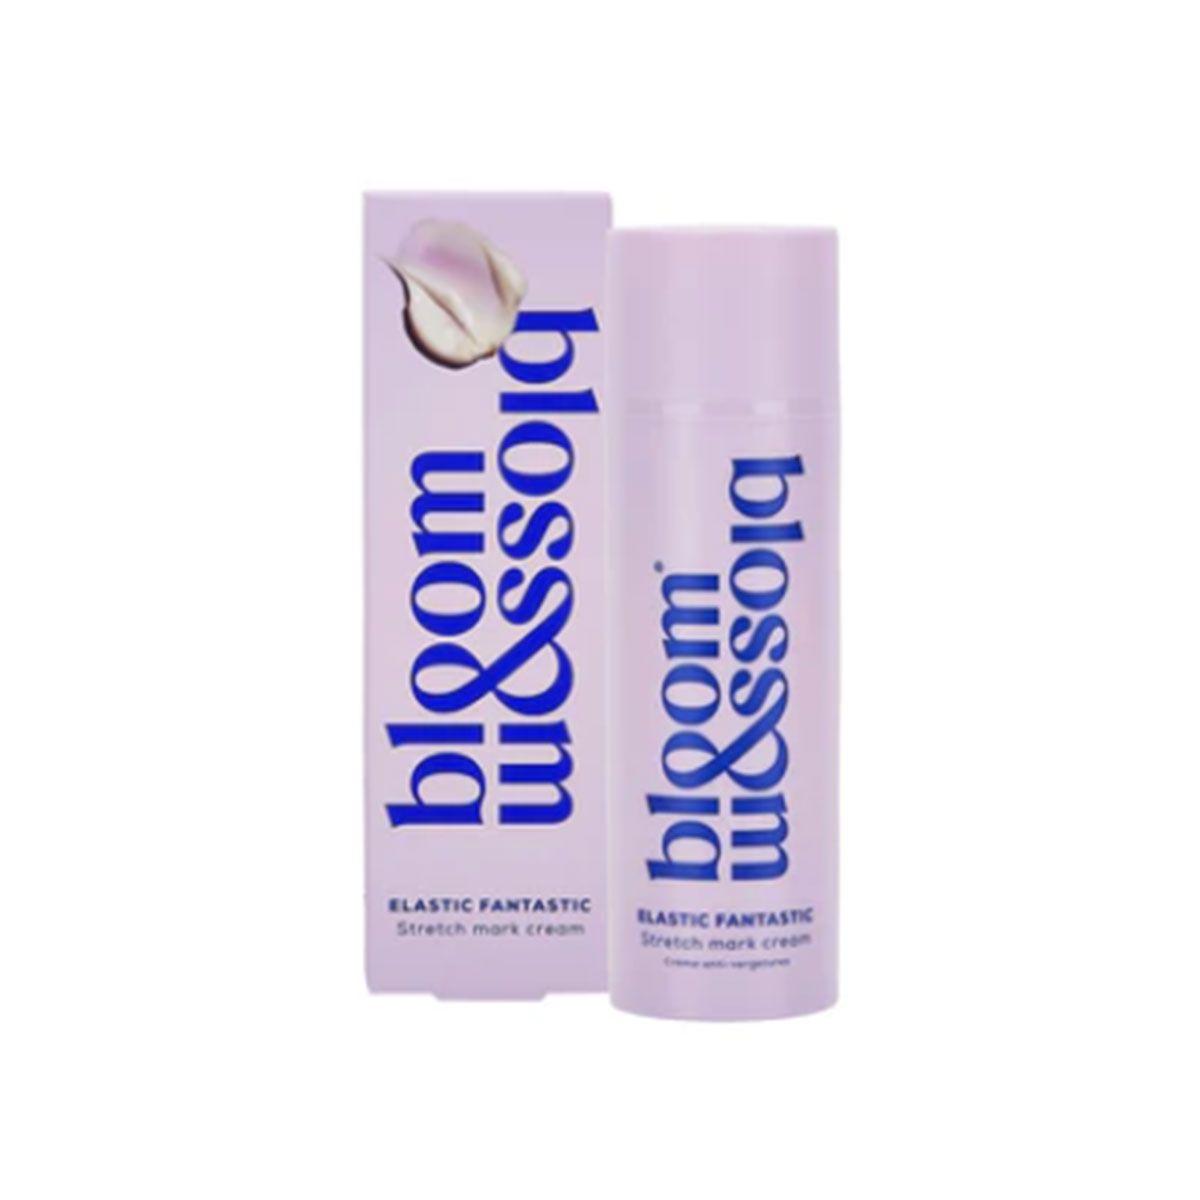 Producto antiestrías, de Bloom &amp; Blosson